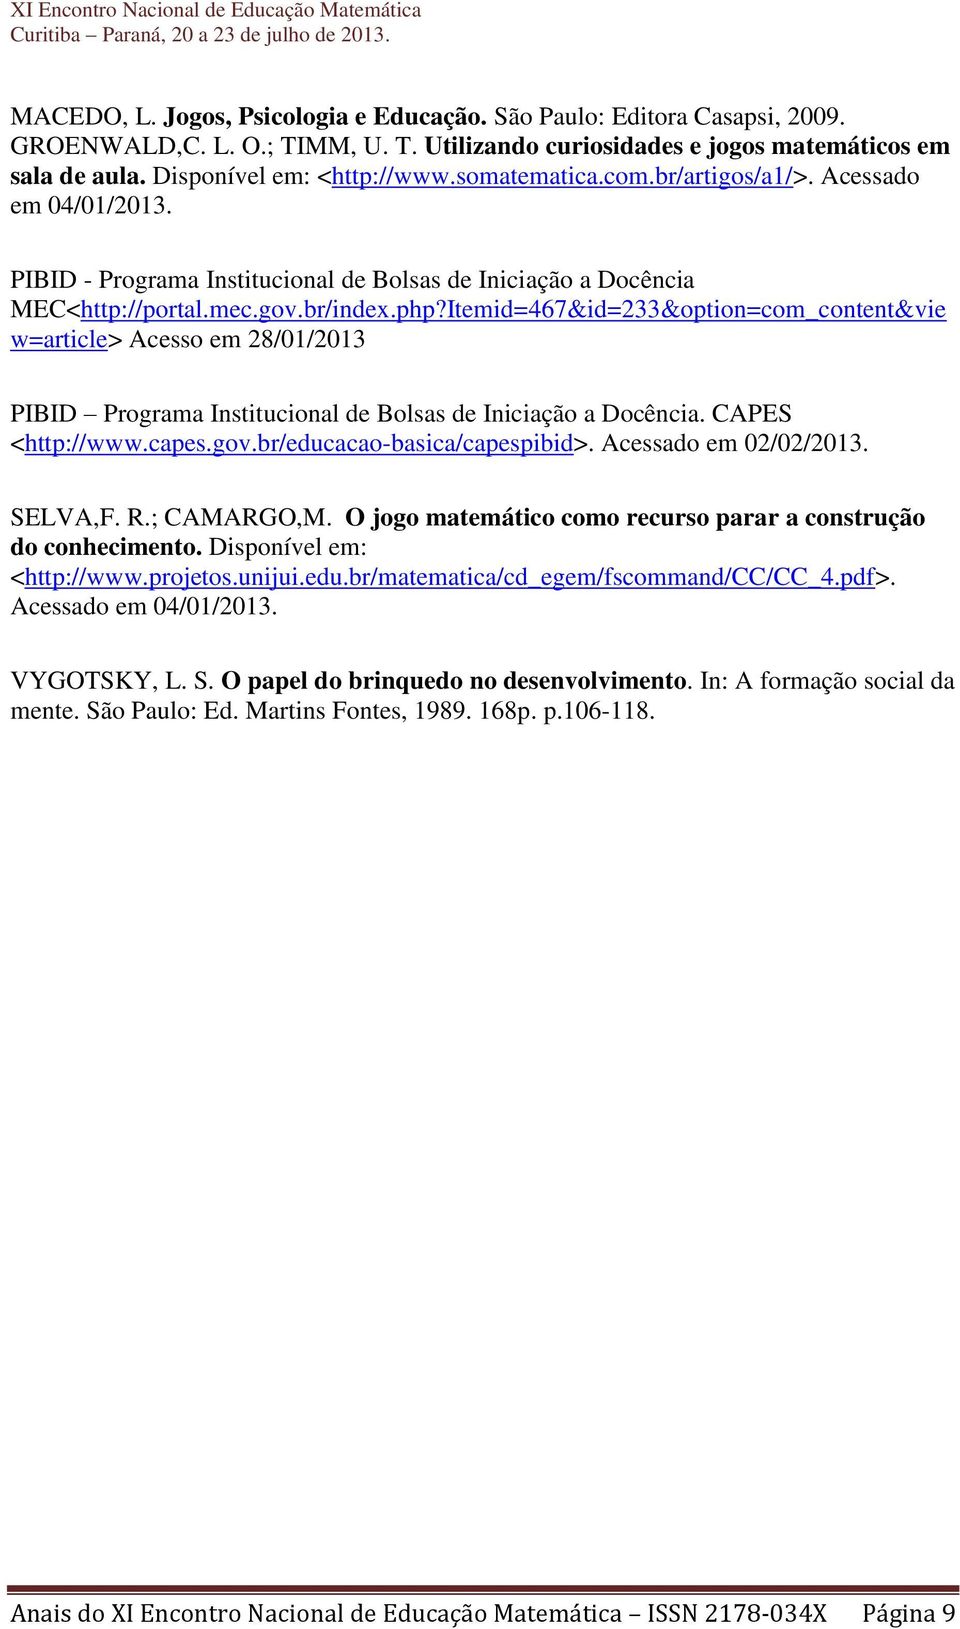 Itemid=467&id=233&option=com_content&vie w=article> Acesso em 28/01/2013 PIBID Programa Institucional de Bolsas de Iniciação a Docência. CAPES <http://www.capes.gov.br/educacao-basica/capespibid>.